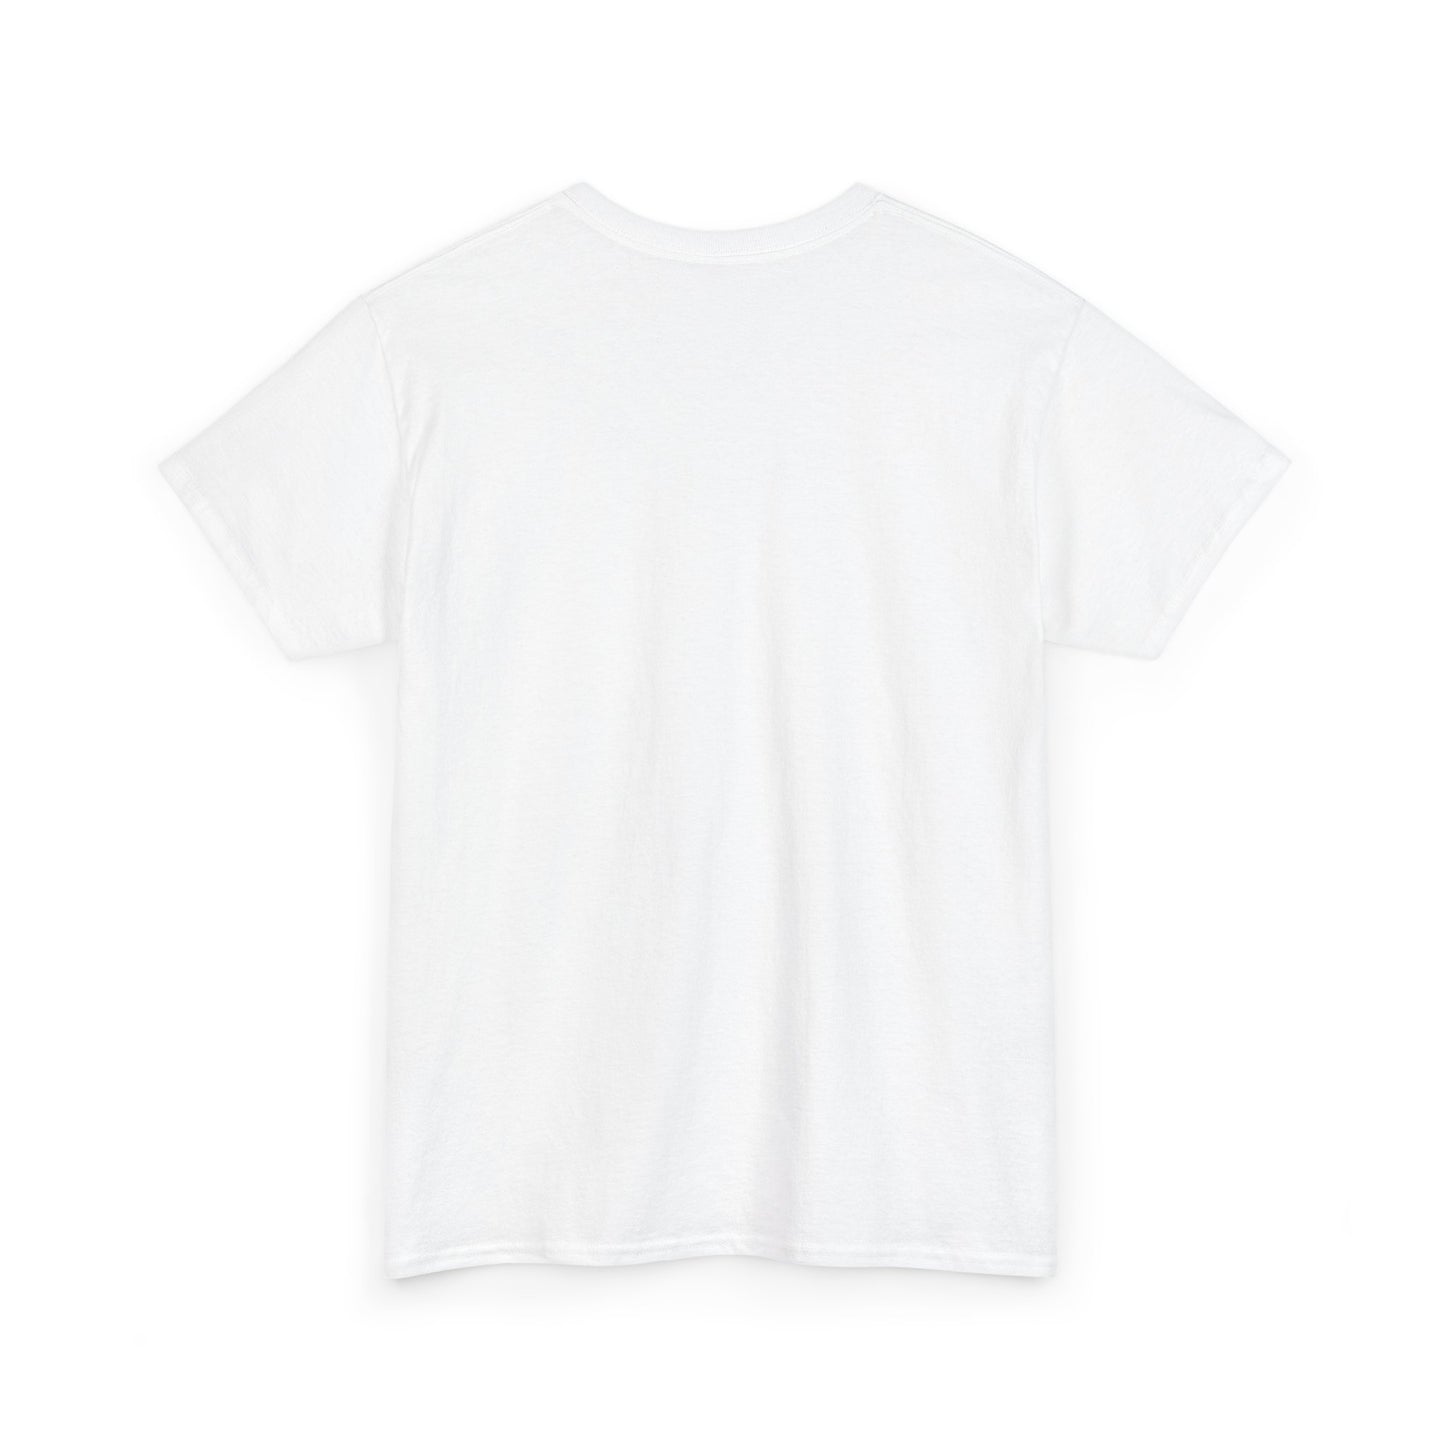 Unisex Heavy Cotton Graphic Design (Detroit) T-shirt